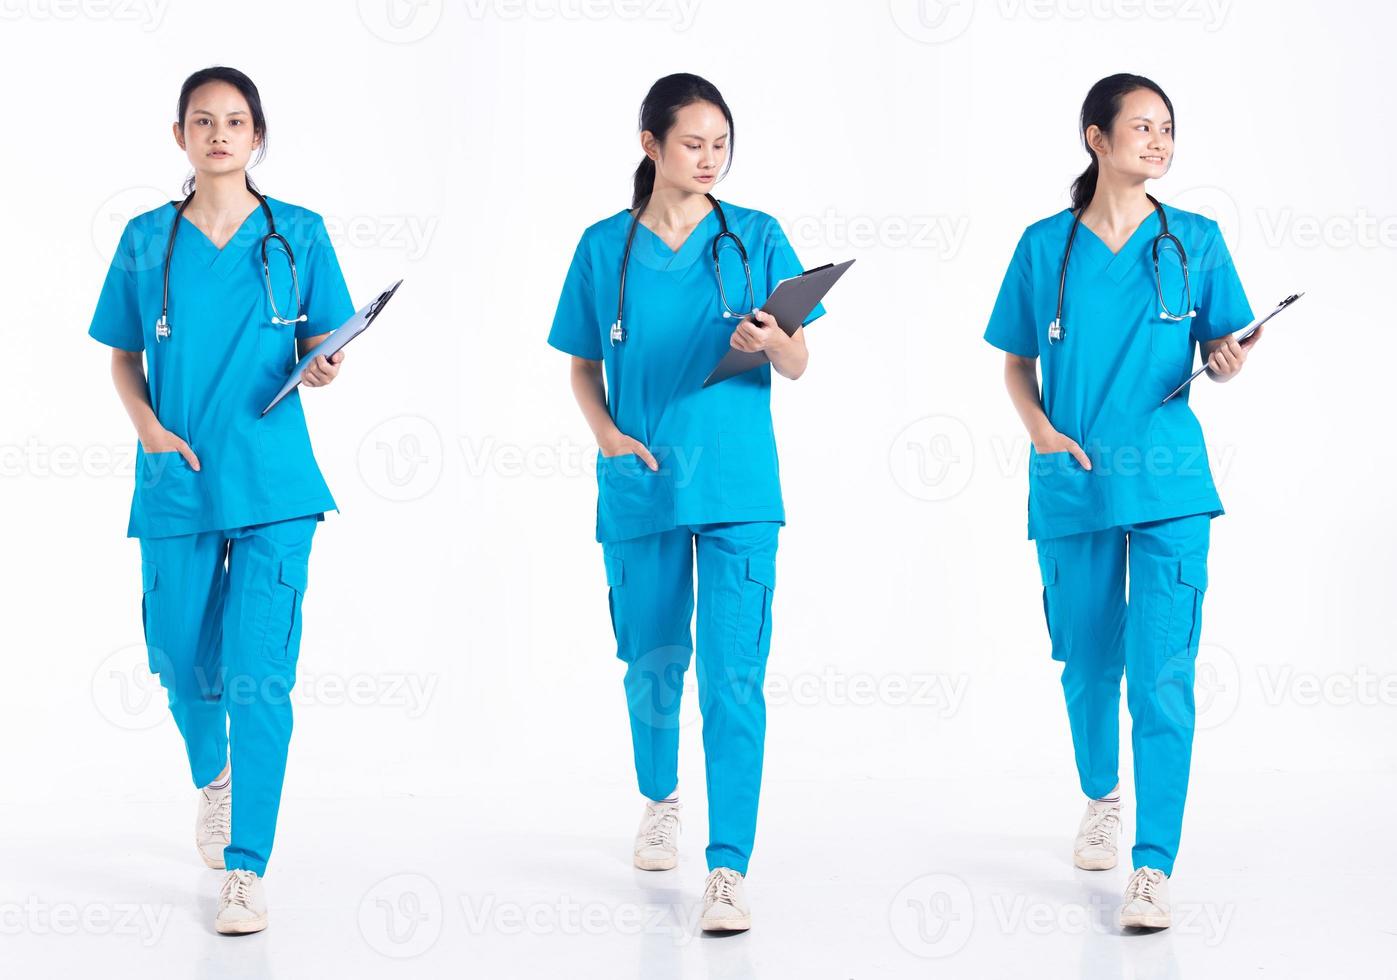 Mujer joven de 20 años de longitud completa, mezcla de raza, enfermera del hospital, caminando hacia adelante a la izquierda, paso a la derecha, con uniforme azul de estetoscopio. La doctora siente una sonrisa feliz sobre un fondo blanco aislado foto